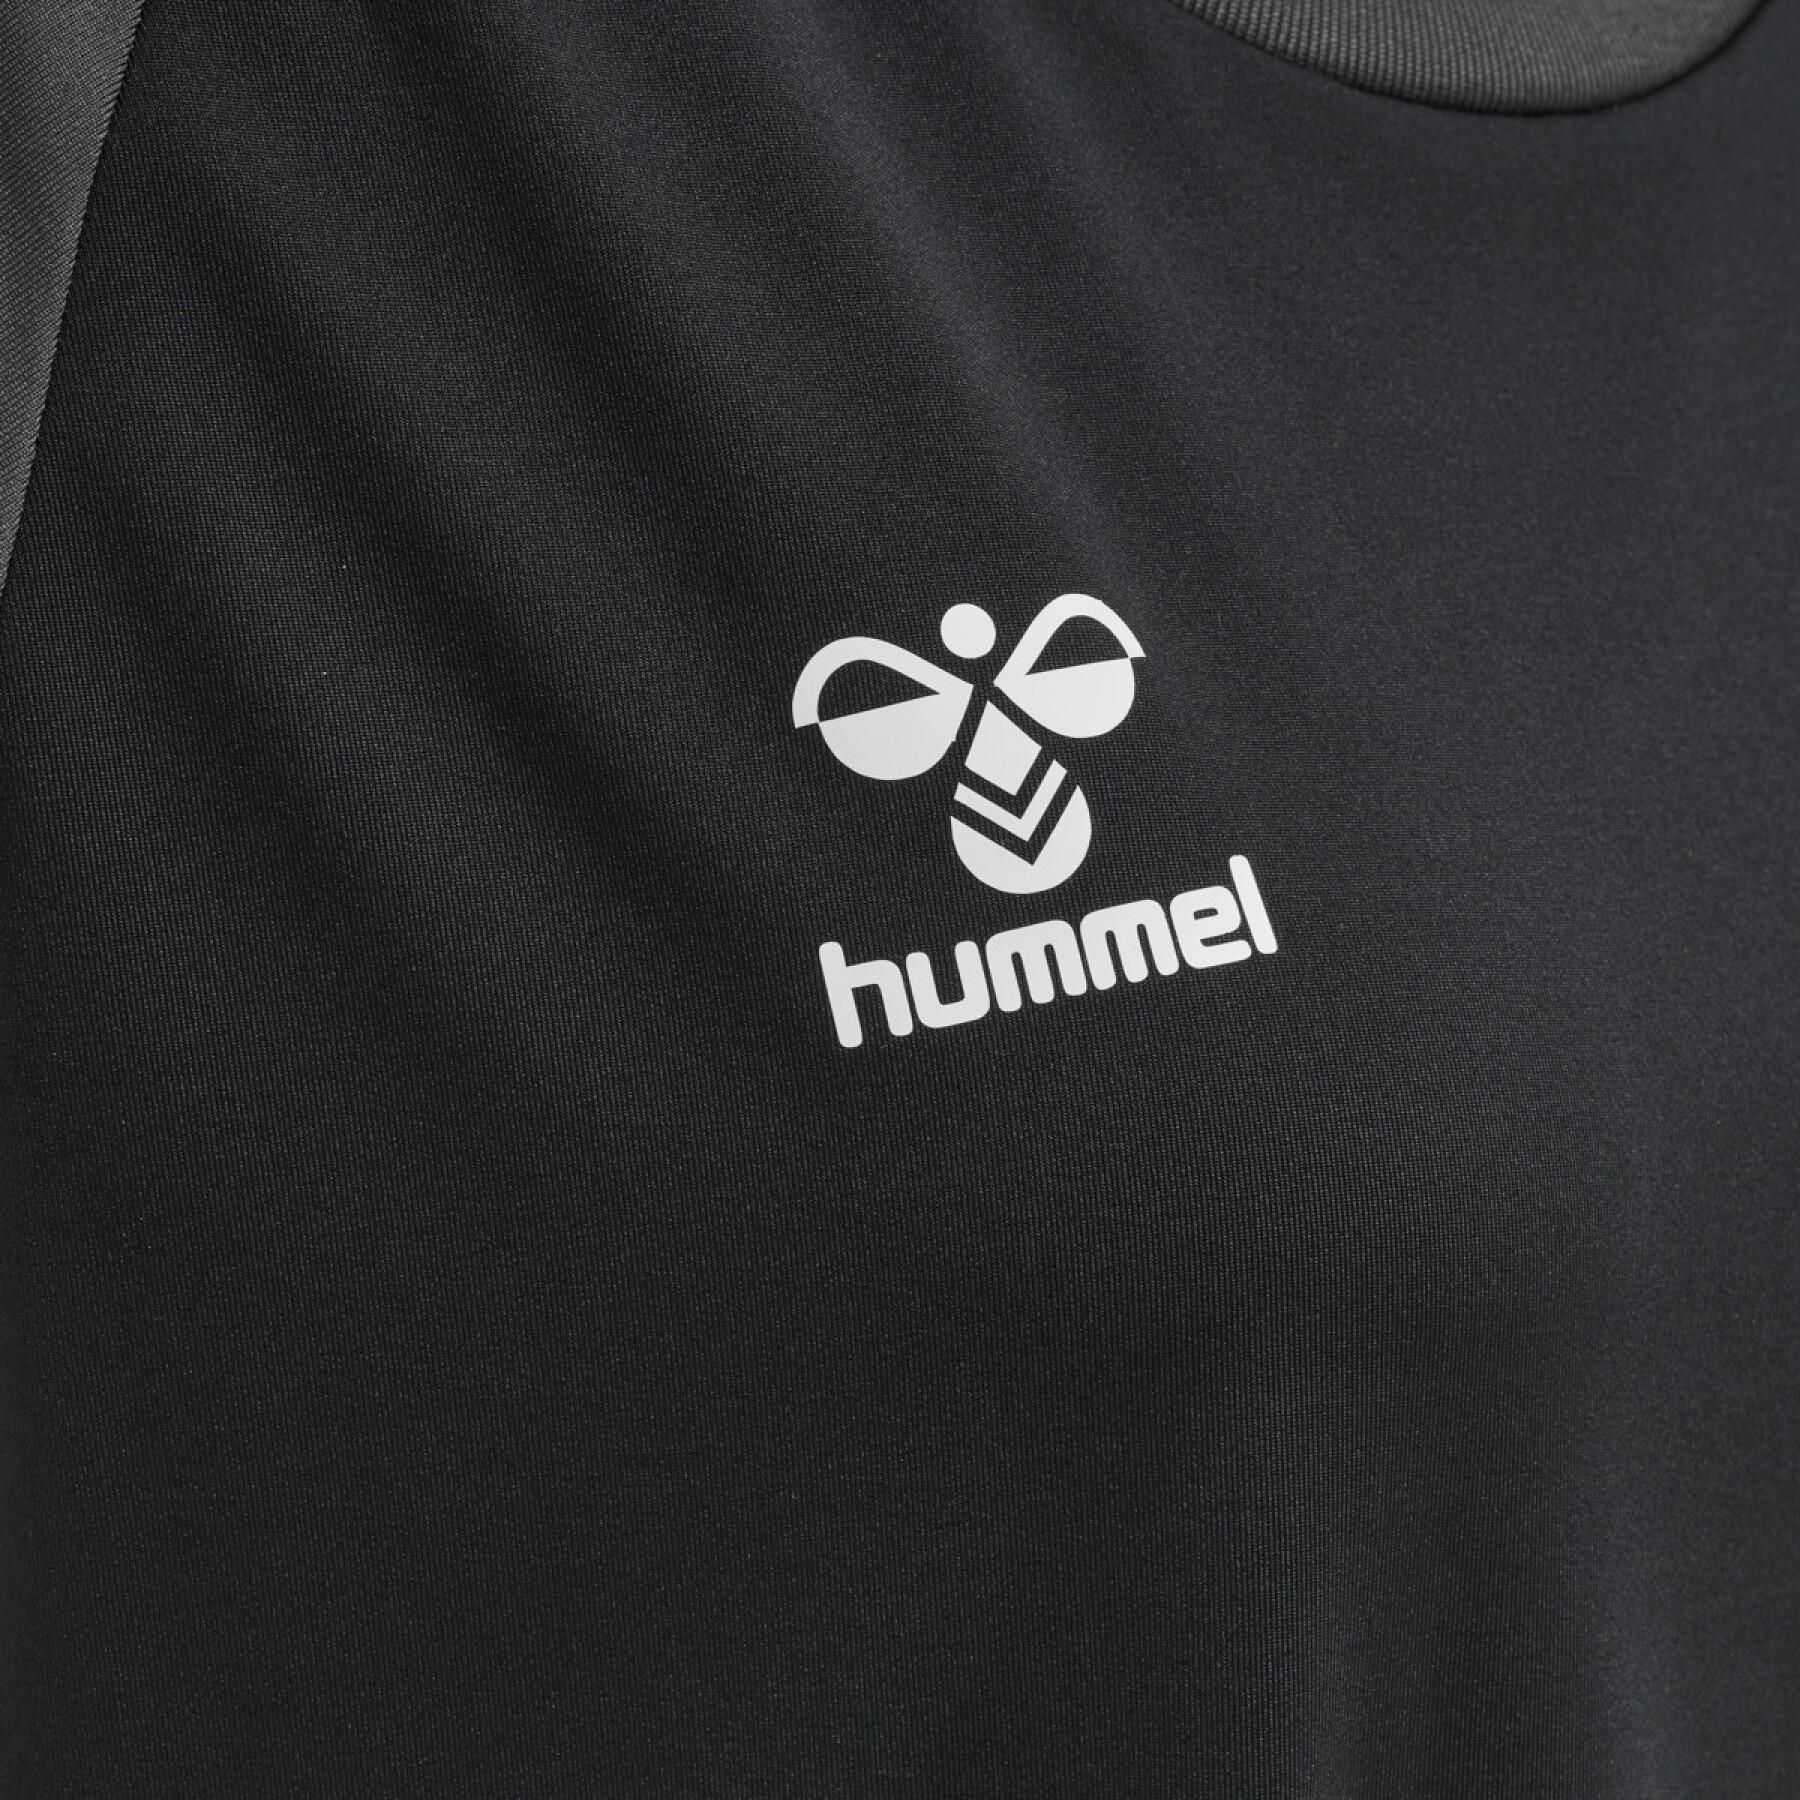 T-shirt femme Hummel hmlhmlCORE volley stretch